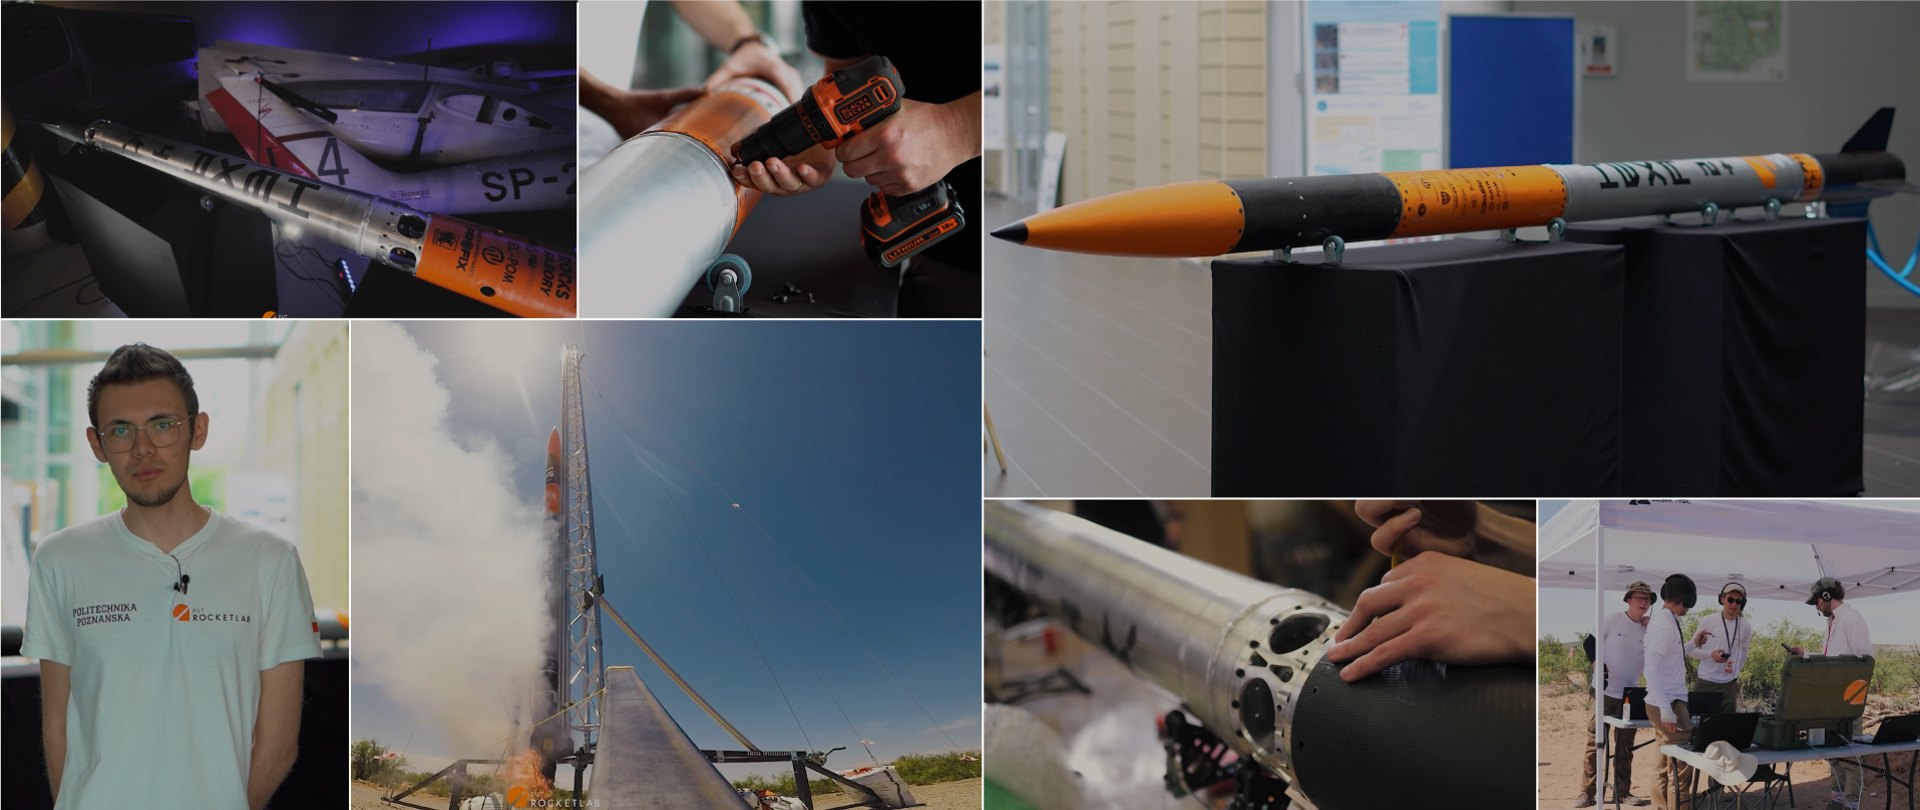 Kolaż kilku zdjęć przedstawiający studentów konstruujących rakiety kosmiczne.